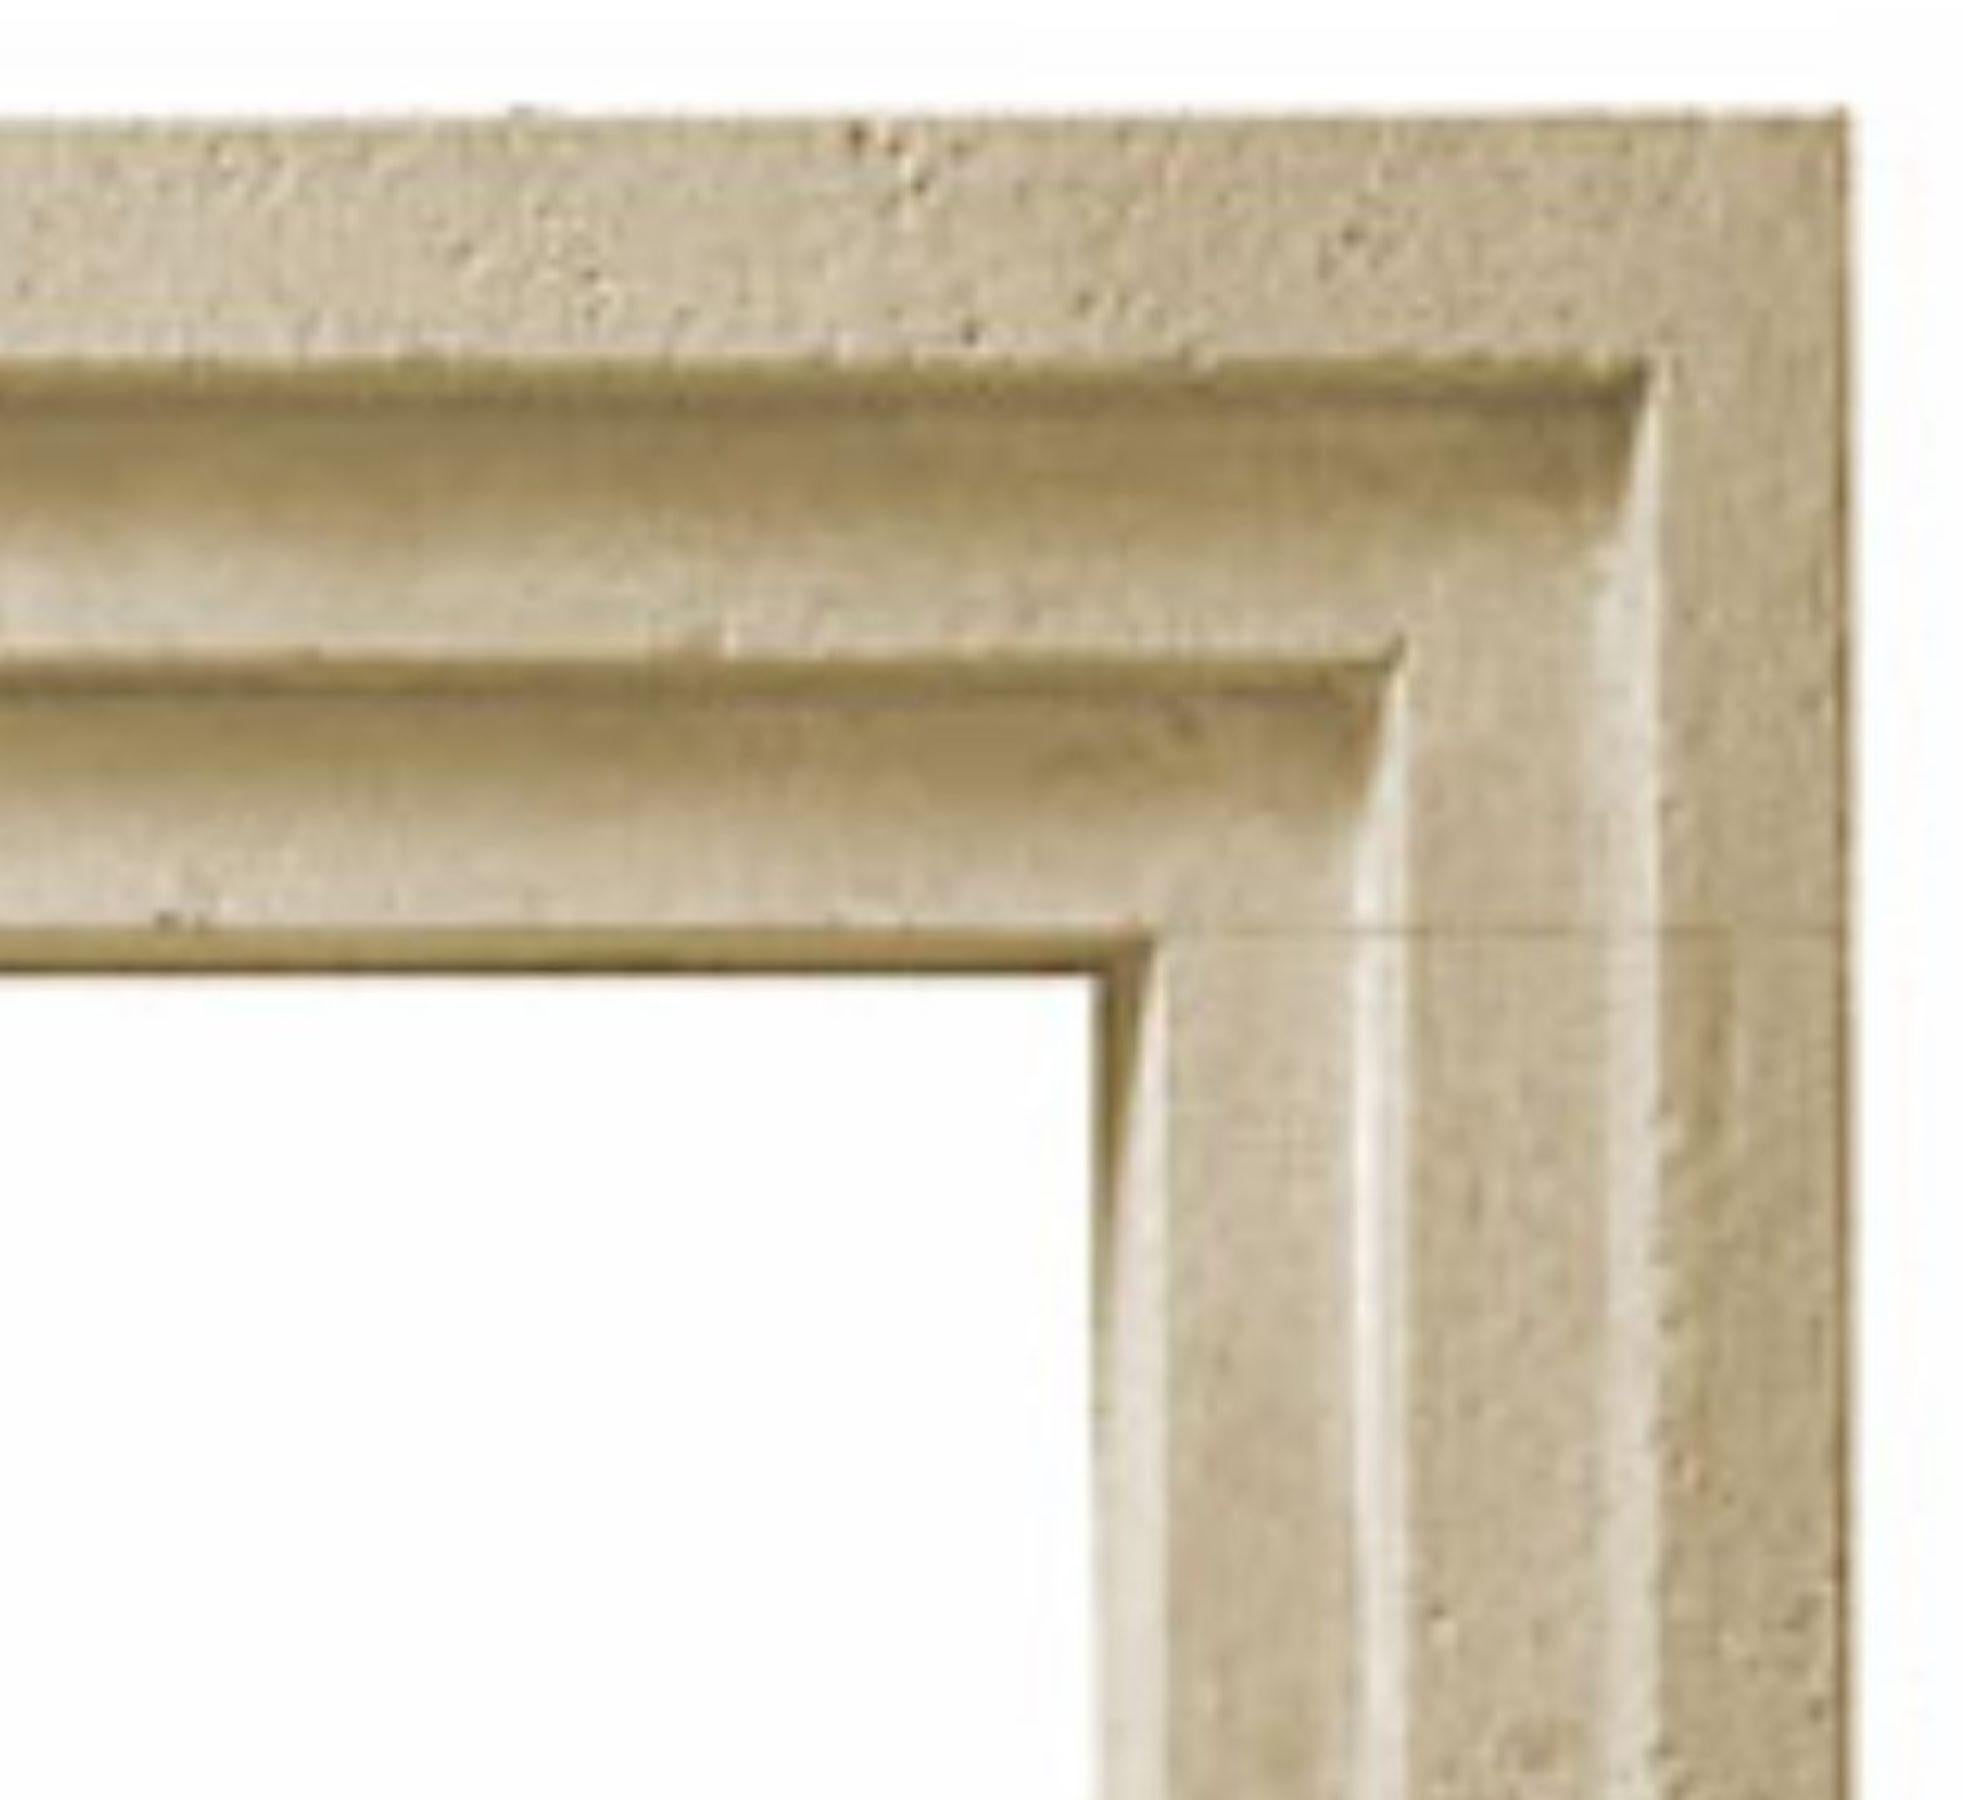 Le Tri-Minimalist est une cheminée moderne en pierre avec un profil classique Art Déco à gradins. La maçonnerie s'avance en 3 fois, d'où le nom de cette cheminée.  La largeur de chaque marche est égale à celle des pieds et du linteau. Avec ses